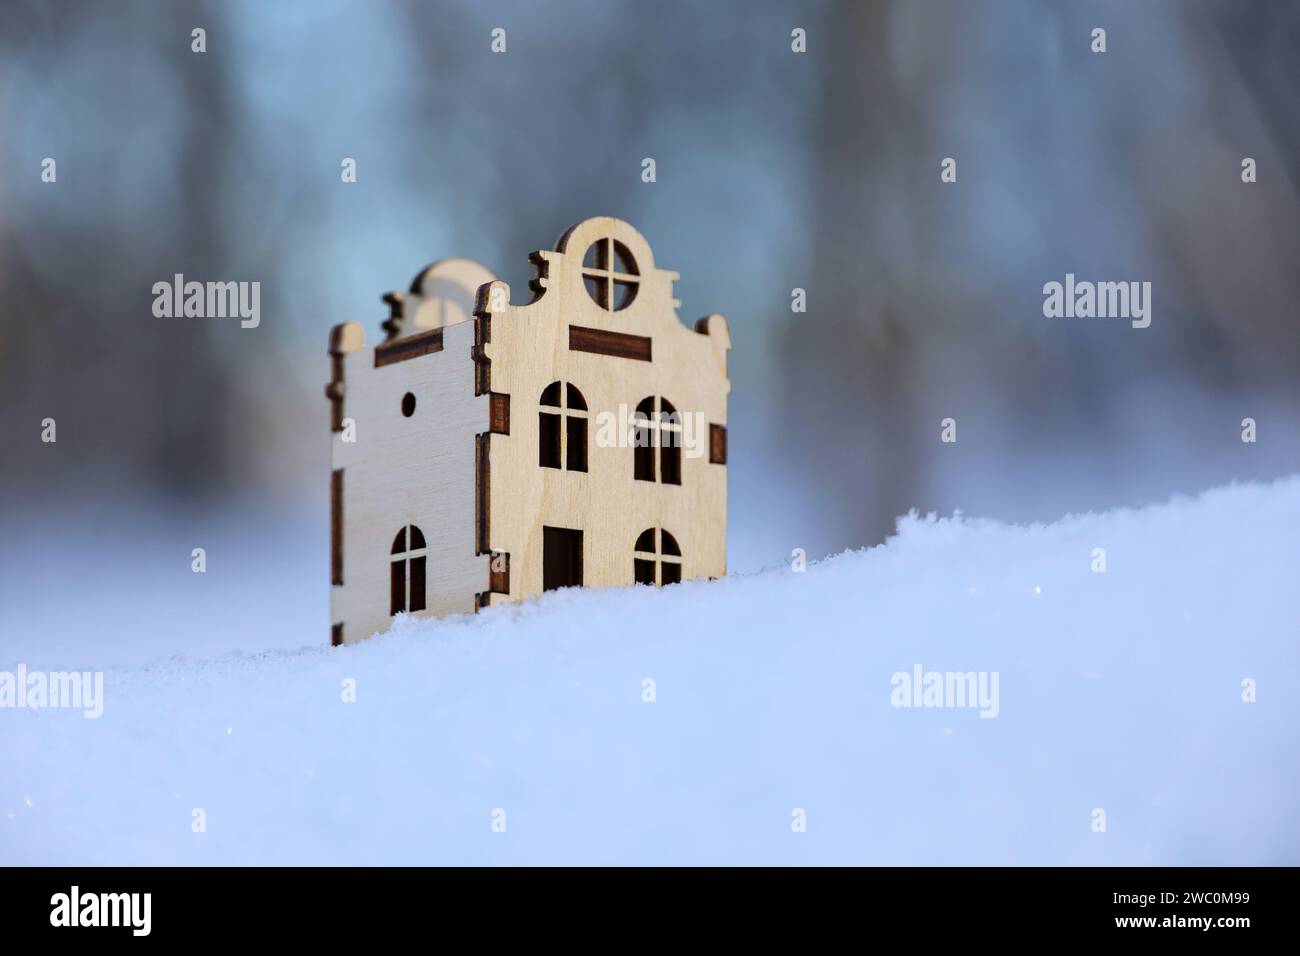 Modèle de maison en bois dans une neige sur fond de forêt d'hiver. Concept de l'immobilier dans la zone écologiquement propre Banque D'Images